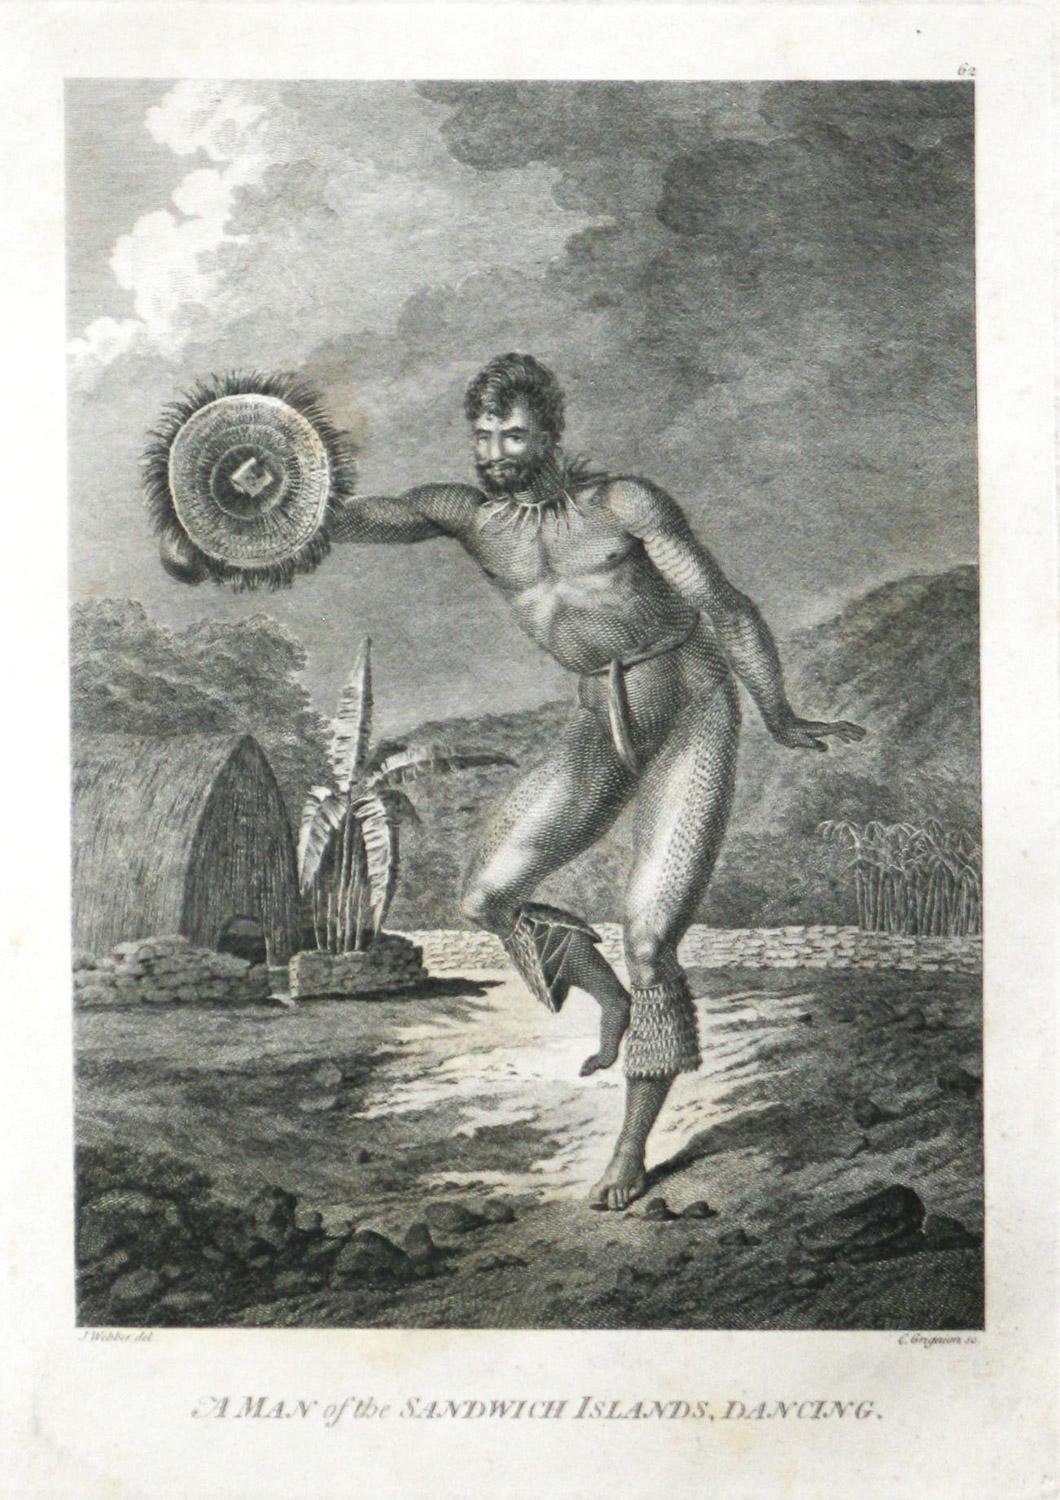 John Webber Figurative Print – Ein Mann der Sandwich-Inseln, Tanzen (Hawaii) von Captain Cooks Reisen graviert